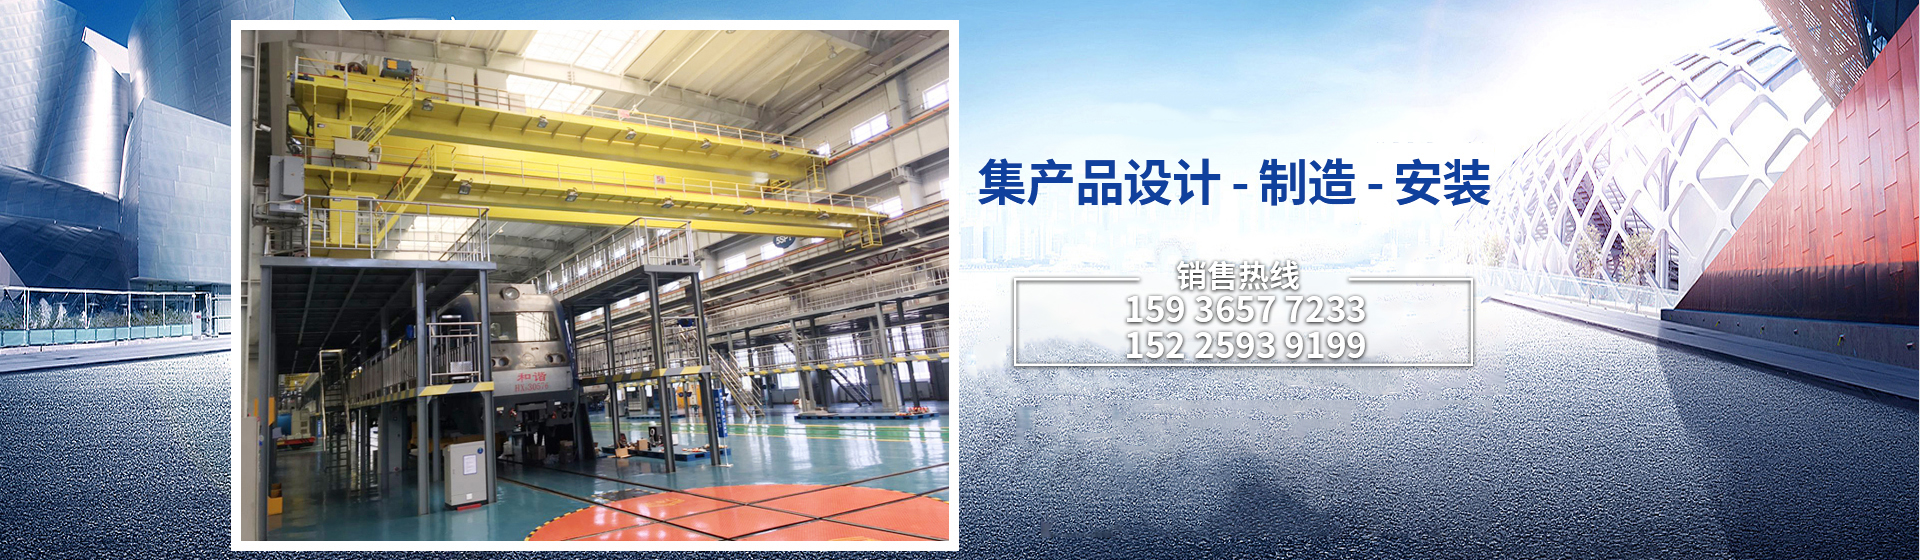 河南省貝塔機電設備有限公司